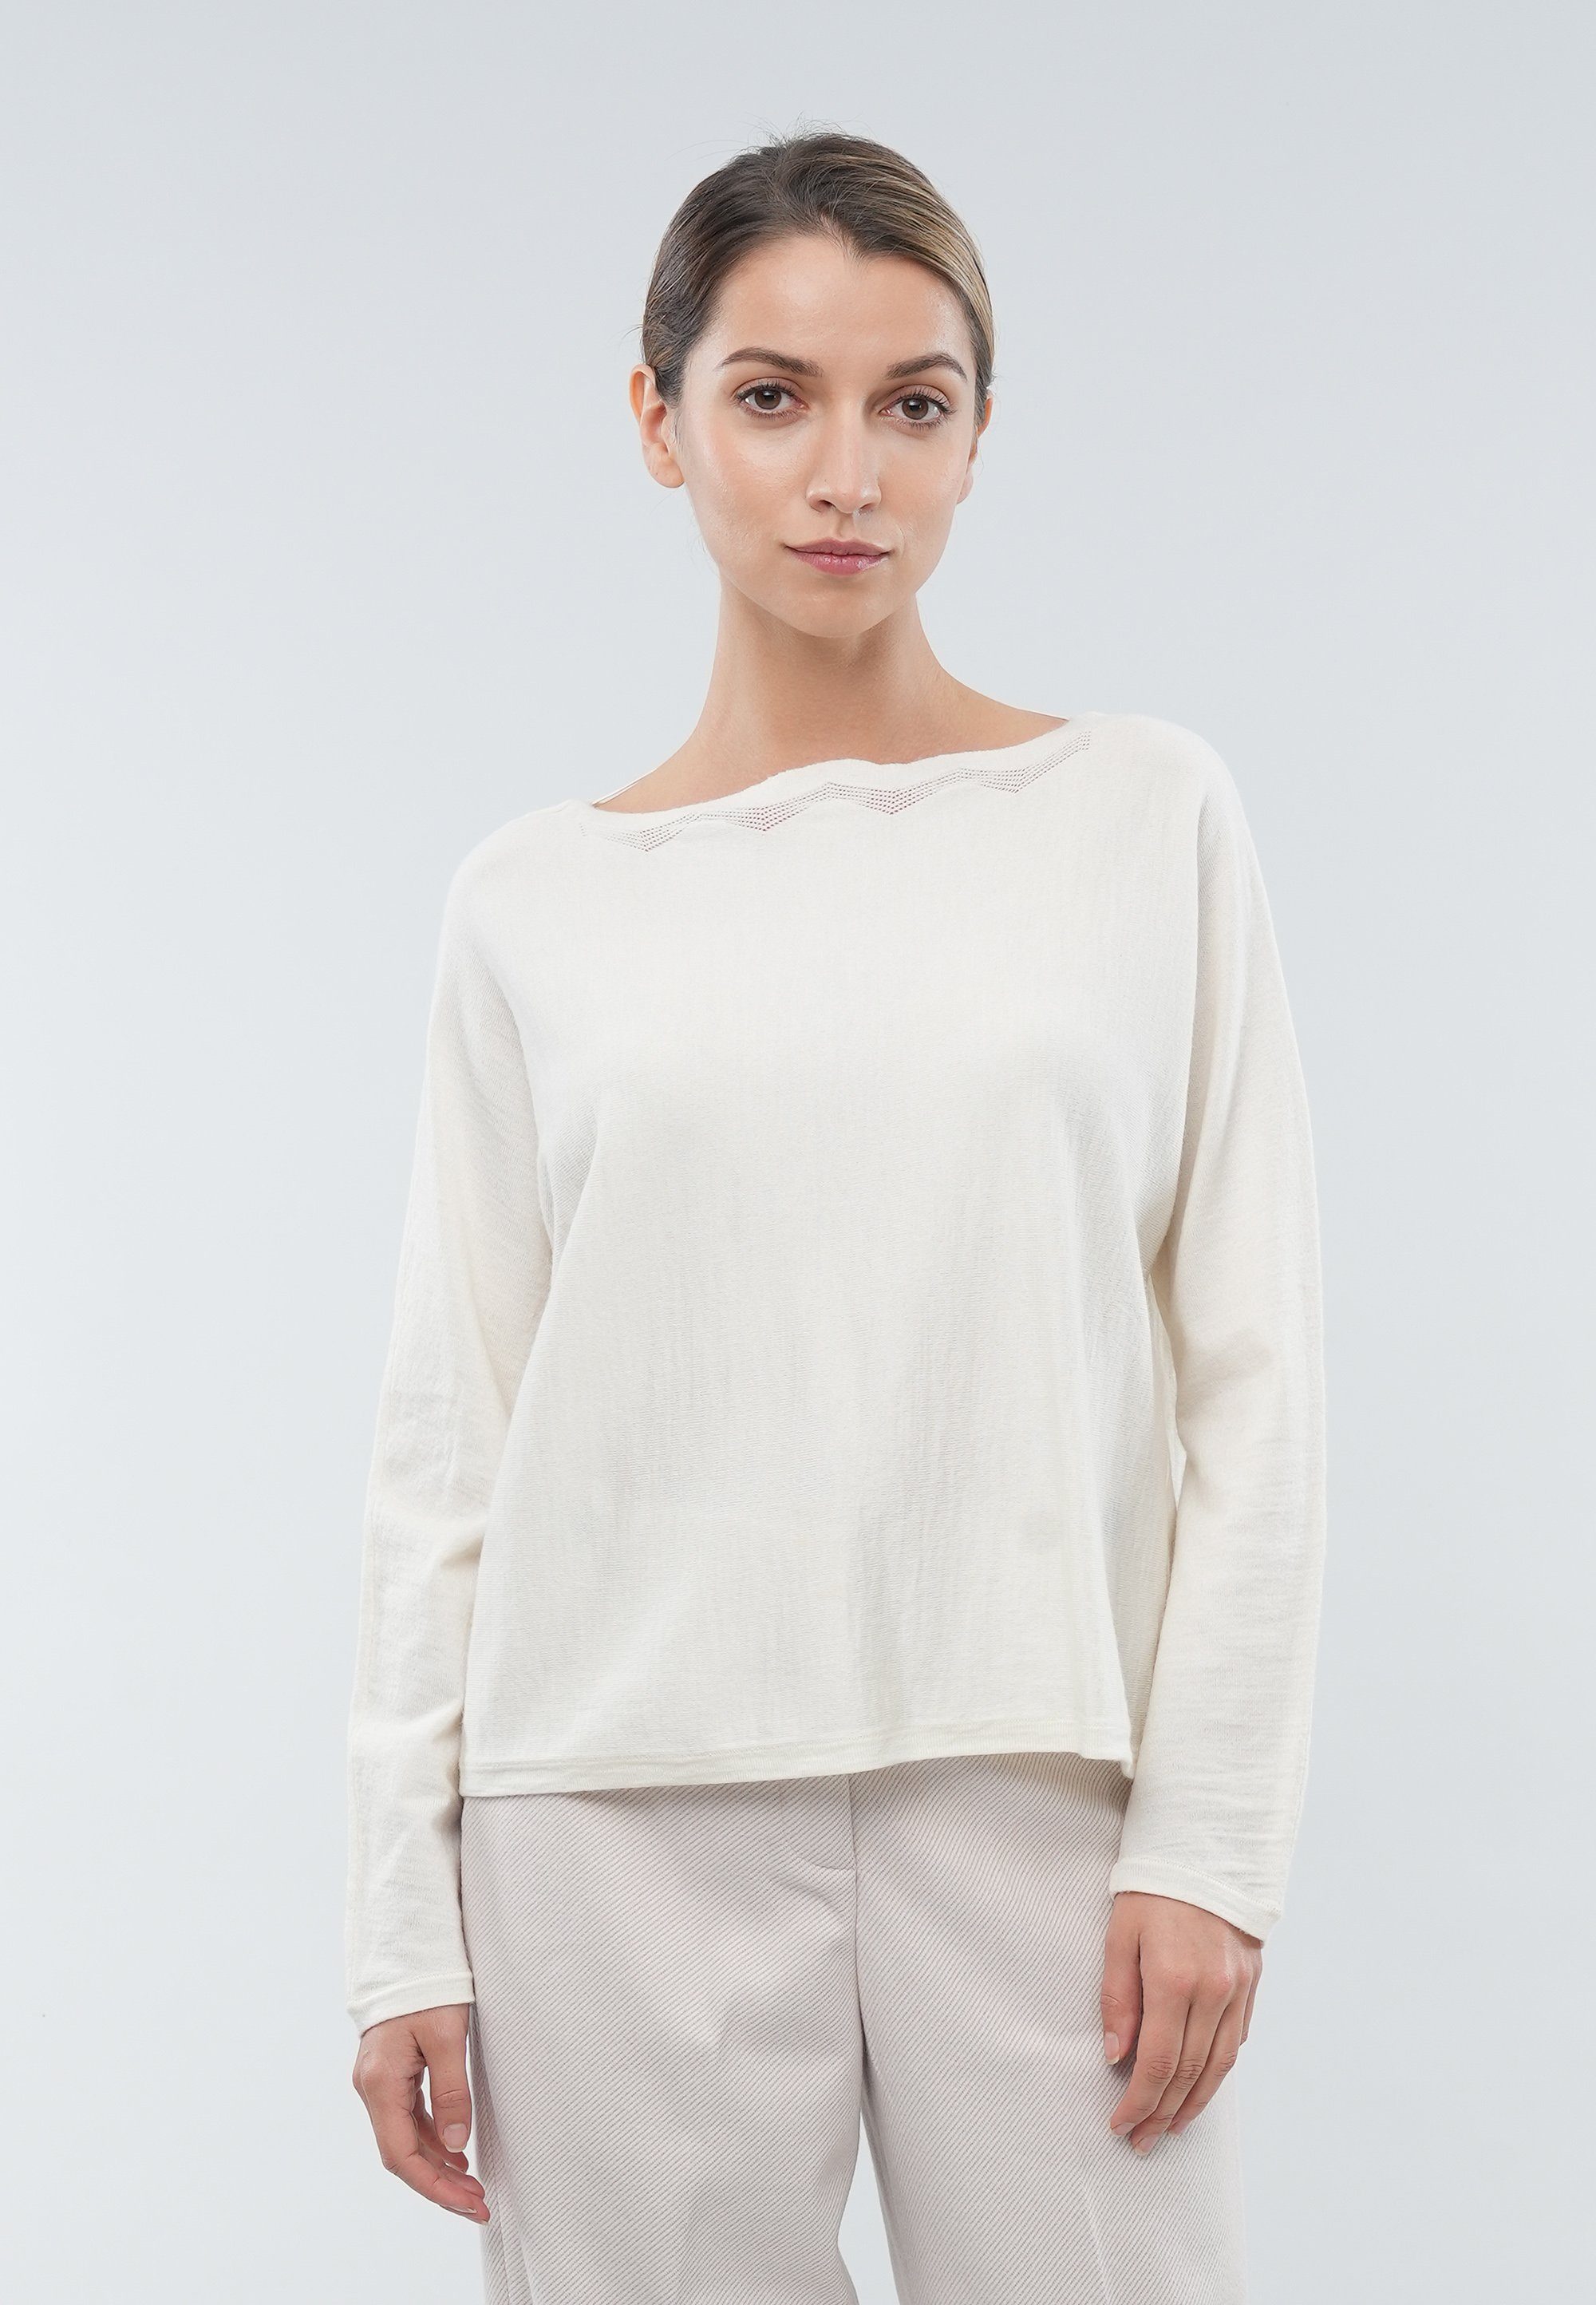 GIORDANO ladies Sweatshirt mit ausgefallenem Ausschnitt | Sweatshirts